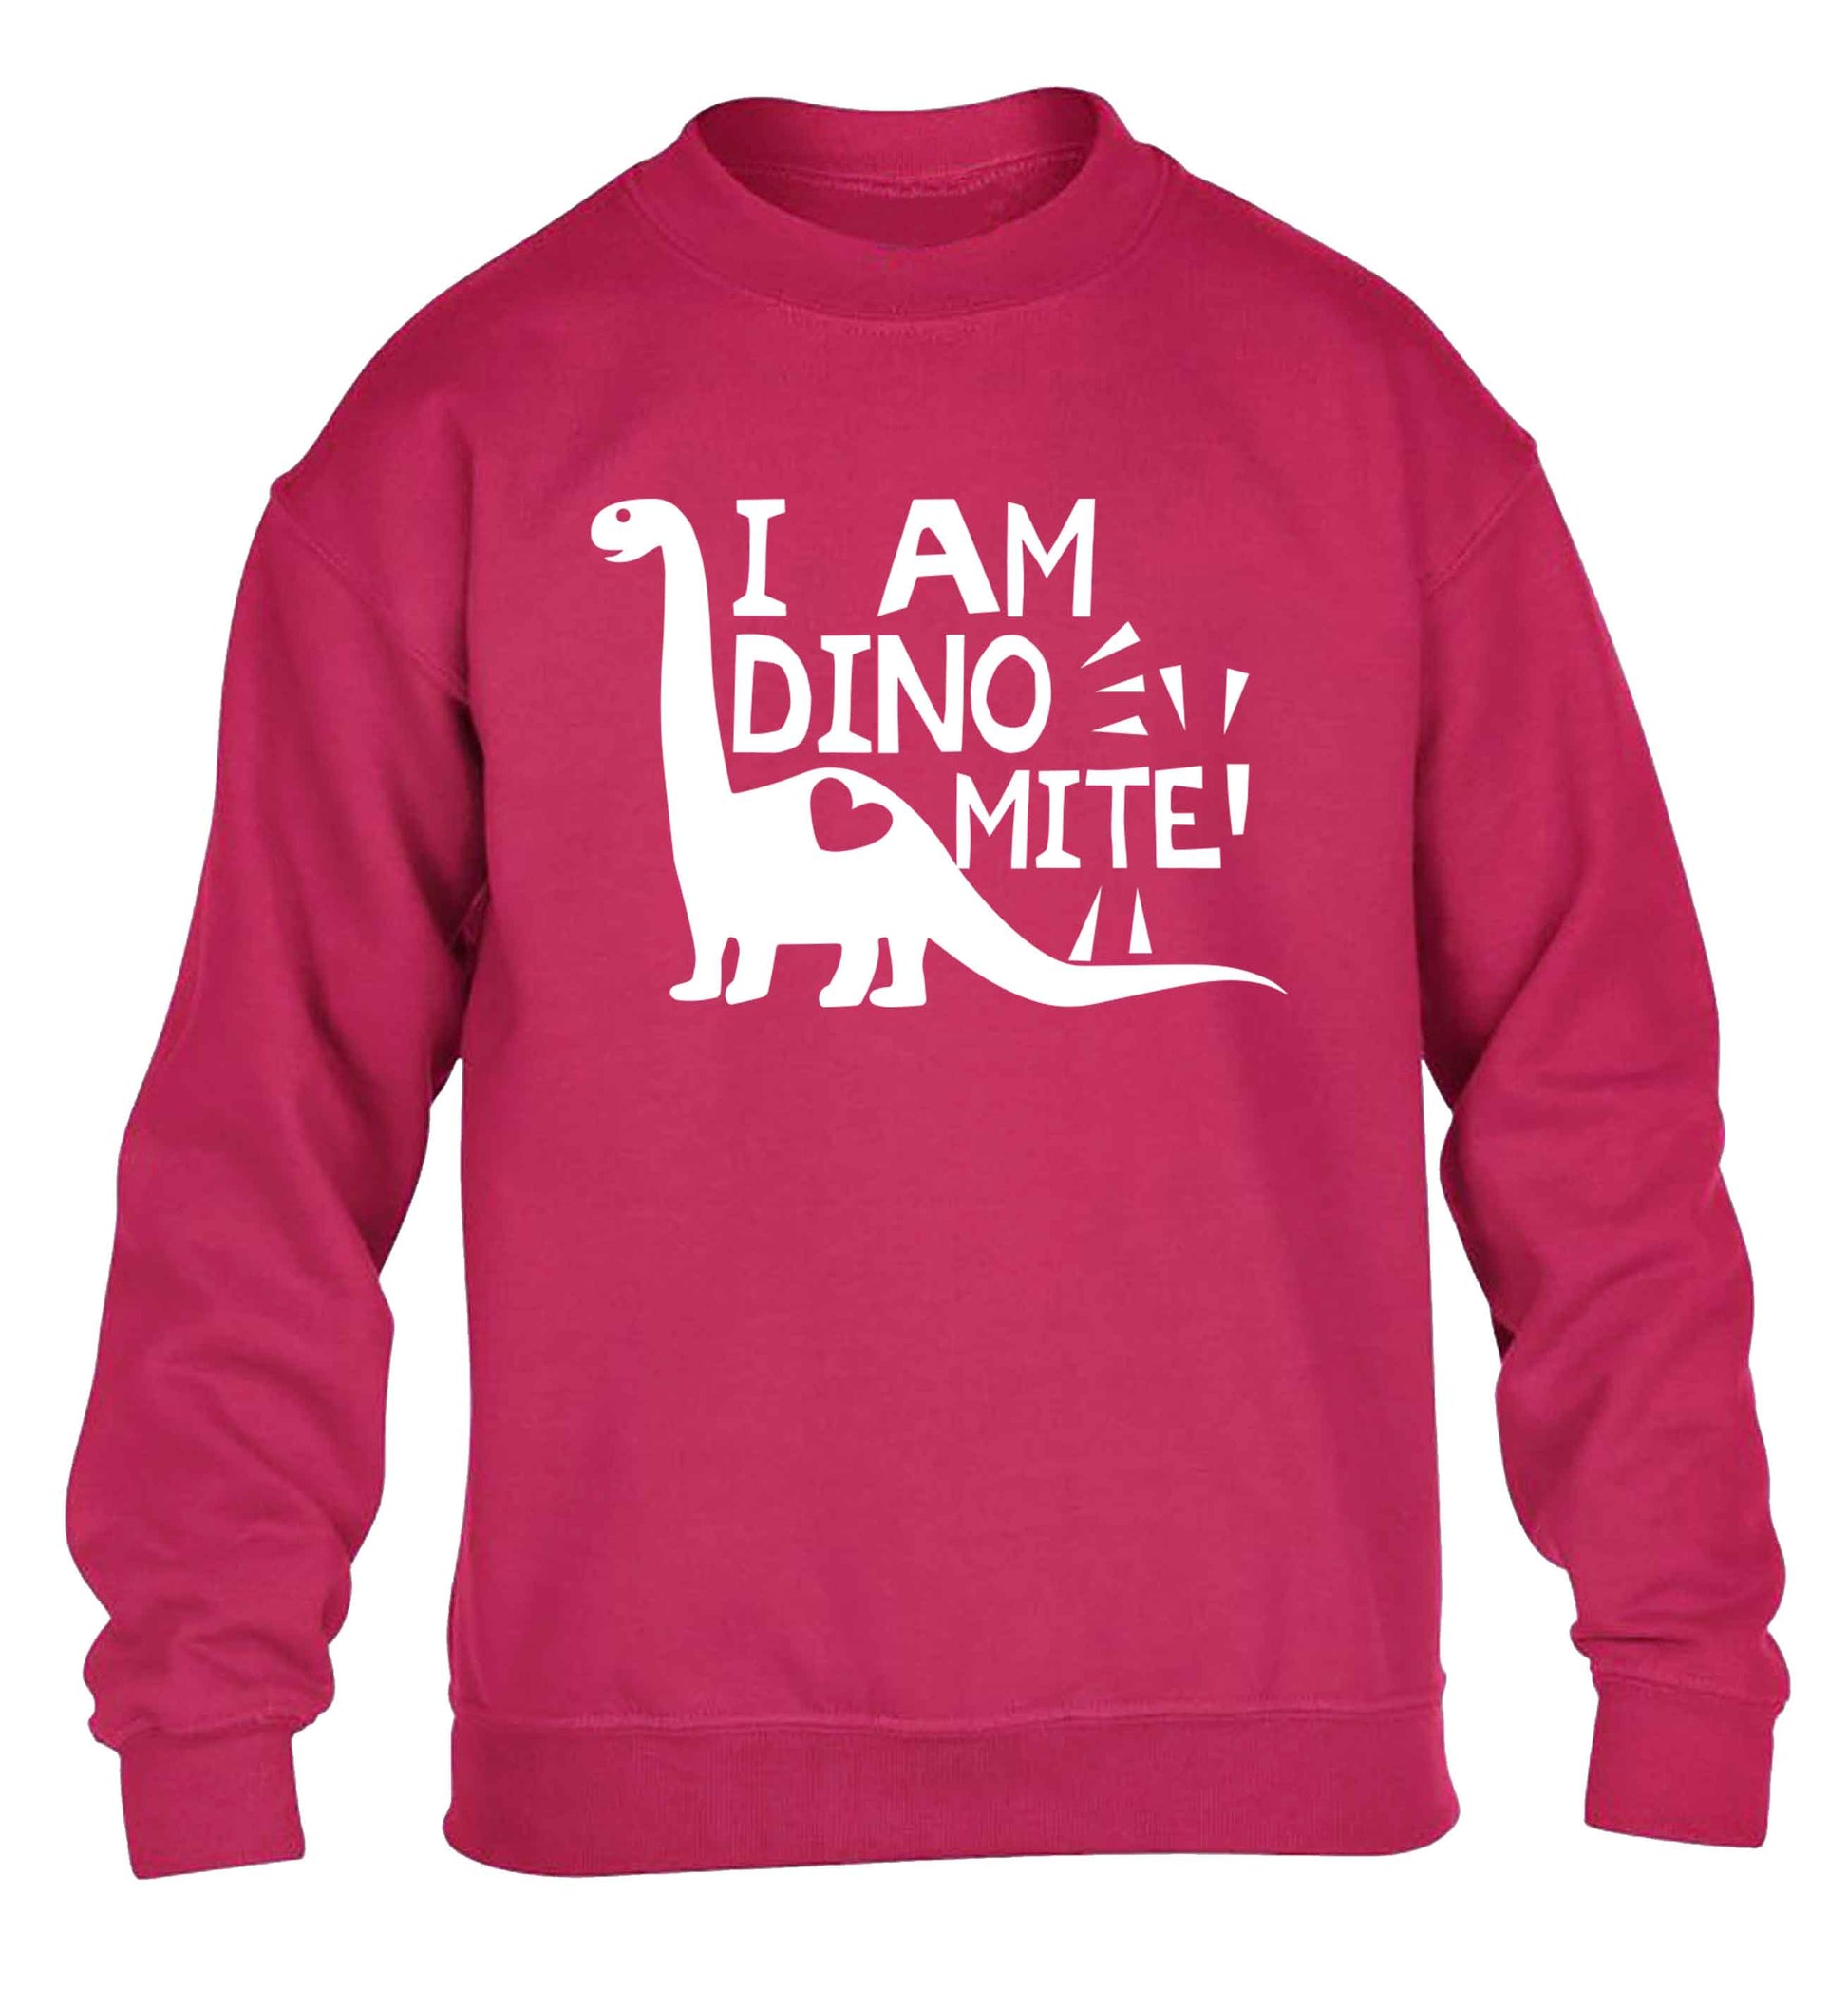 I am dinomite! children's pink sweater 12-13 Years